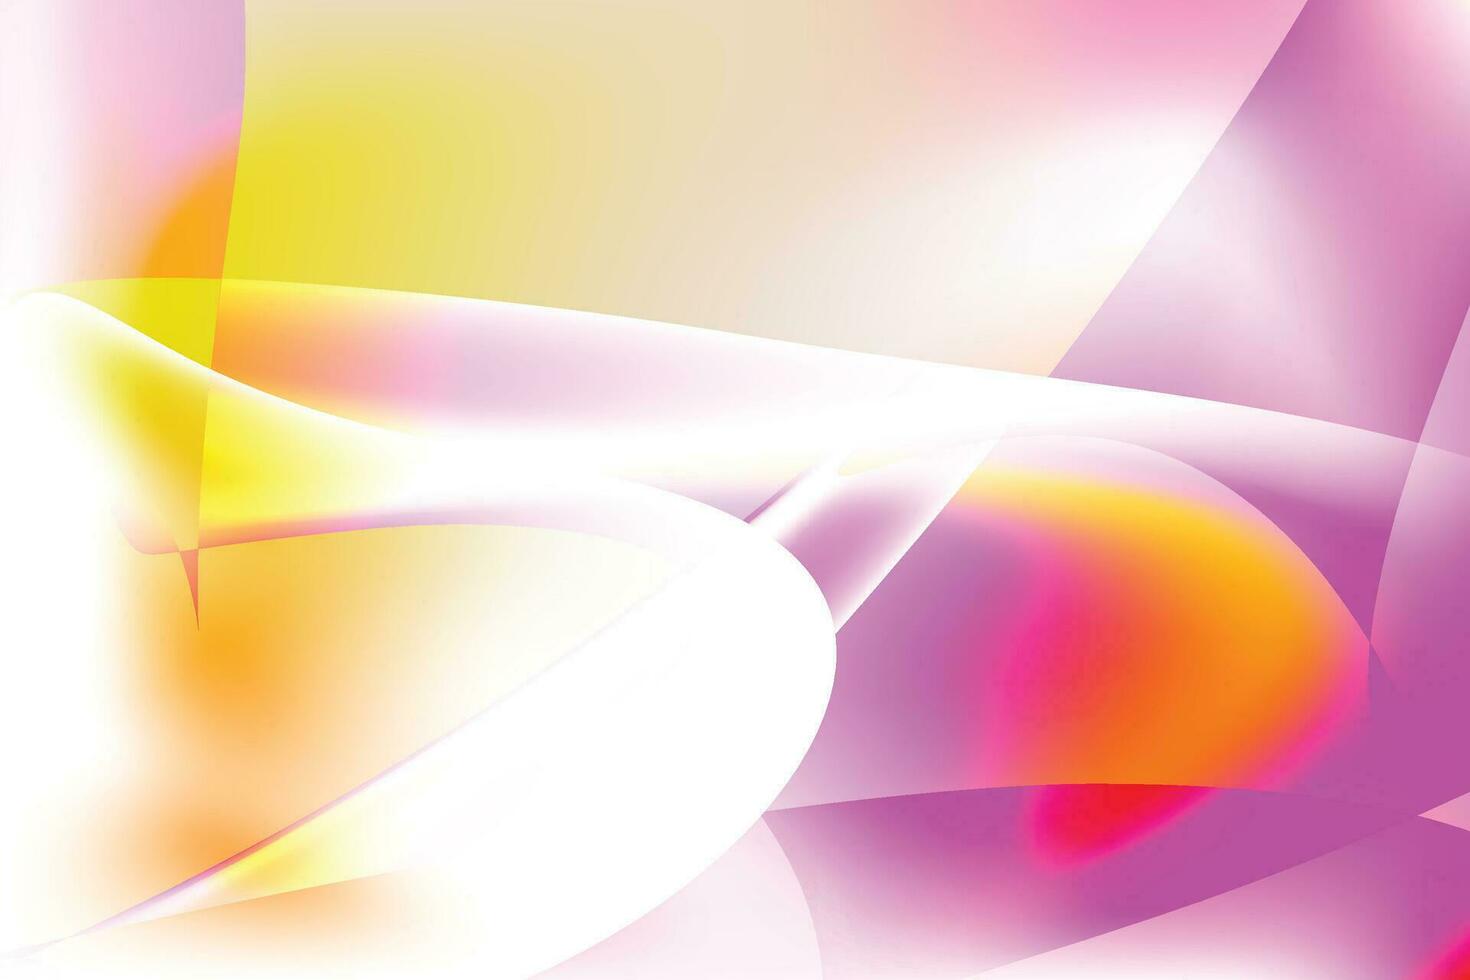 abstrait futuriste dégradé bleu foncé et rose violet avec des lignes à rayures diagonales et un point lumineux. conception de bannière moderne et simple. peut utiliser pour la présentation d'entreprise, l'affiche, le modèle. vecteur